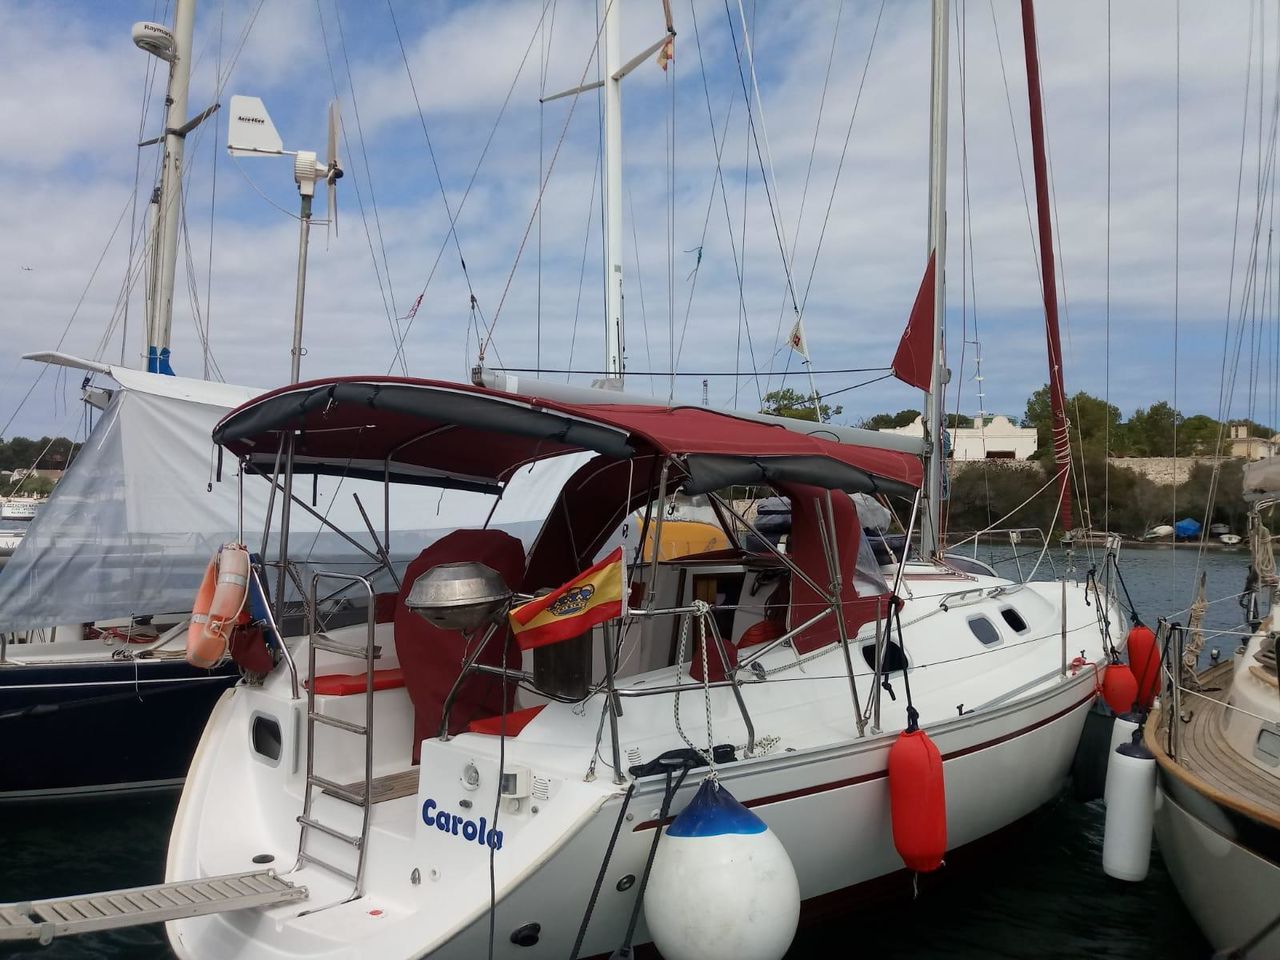 gibert gib sea 334 sailboat for sale